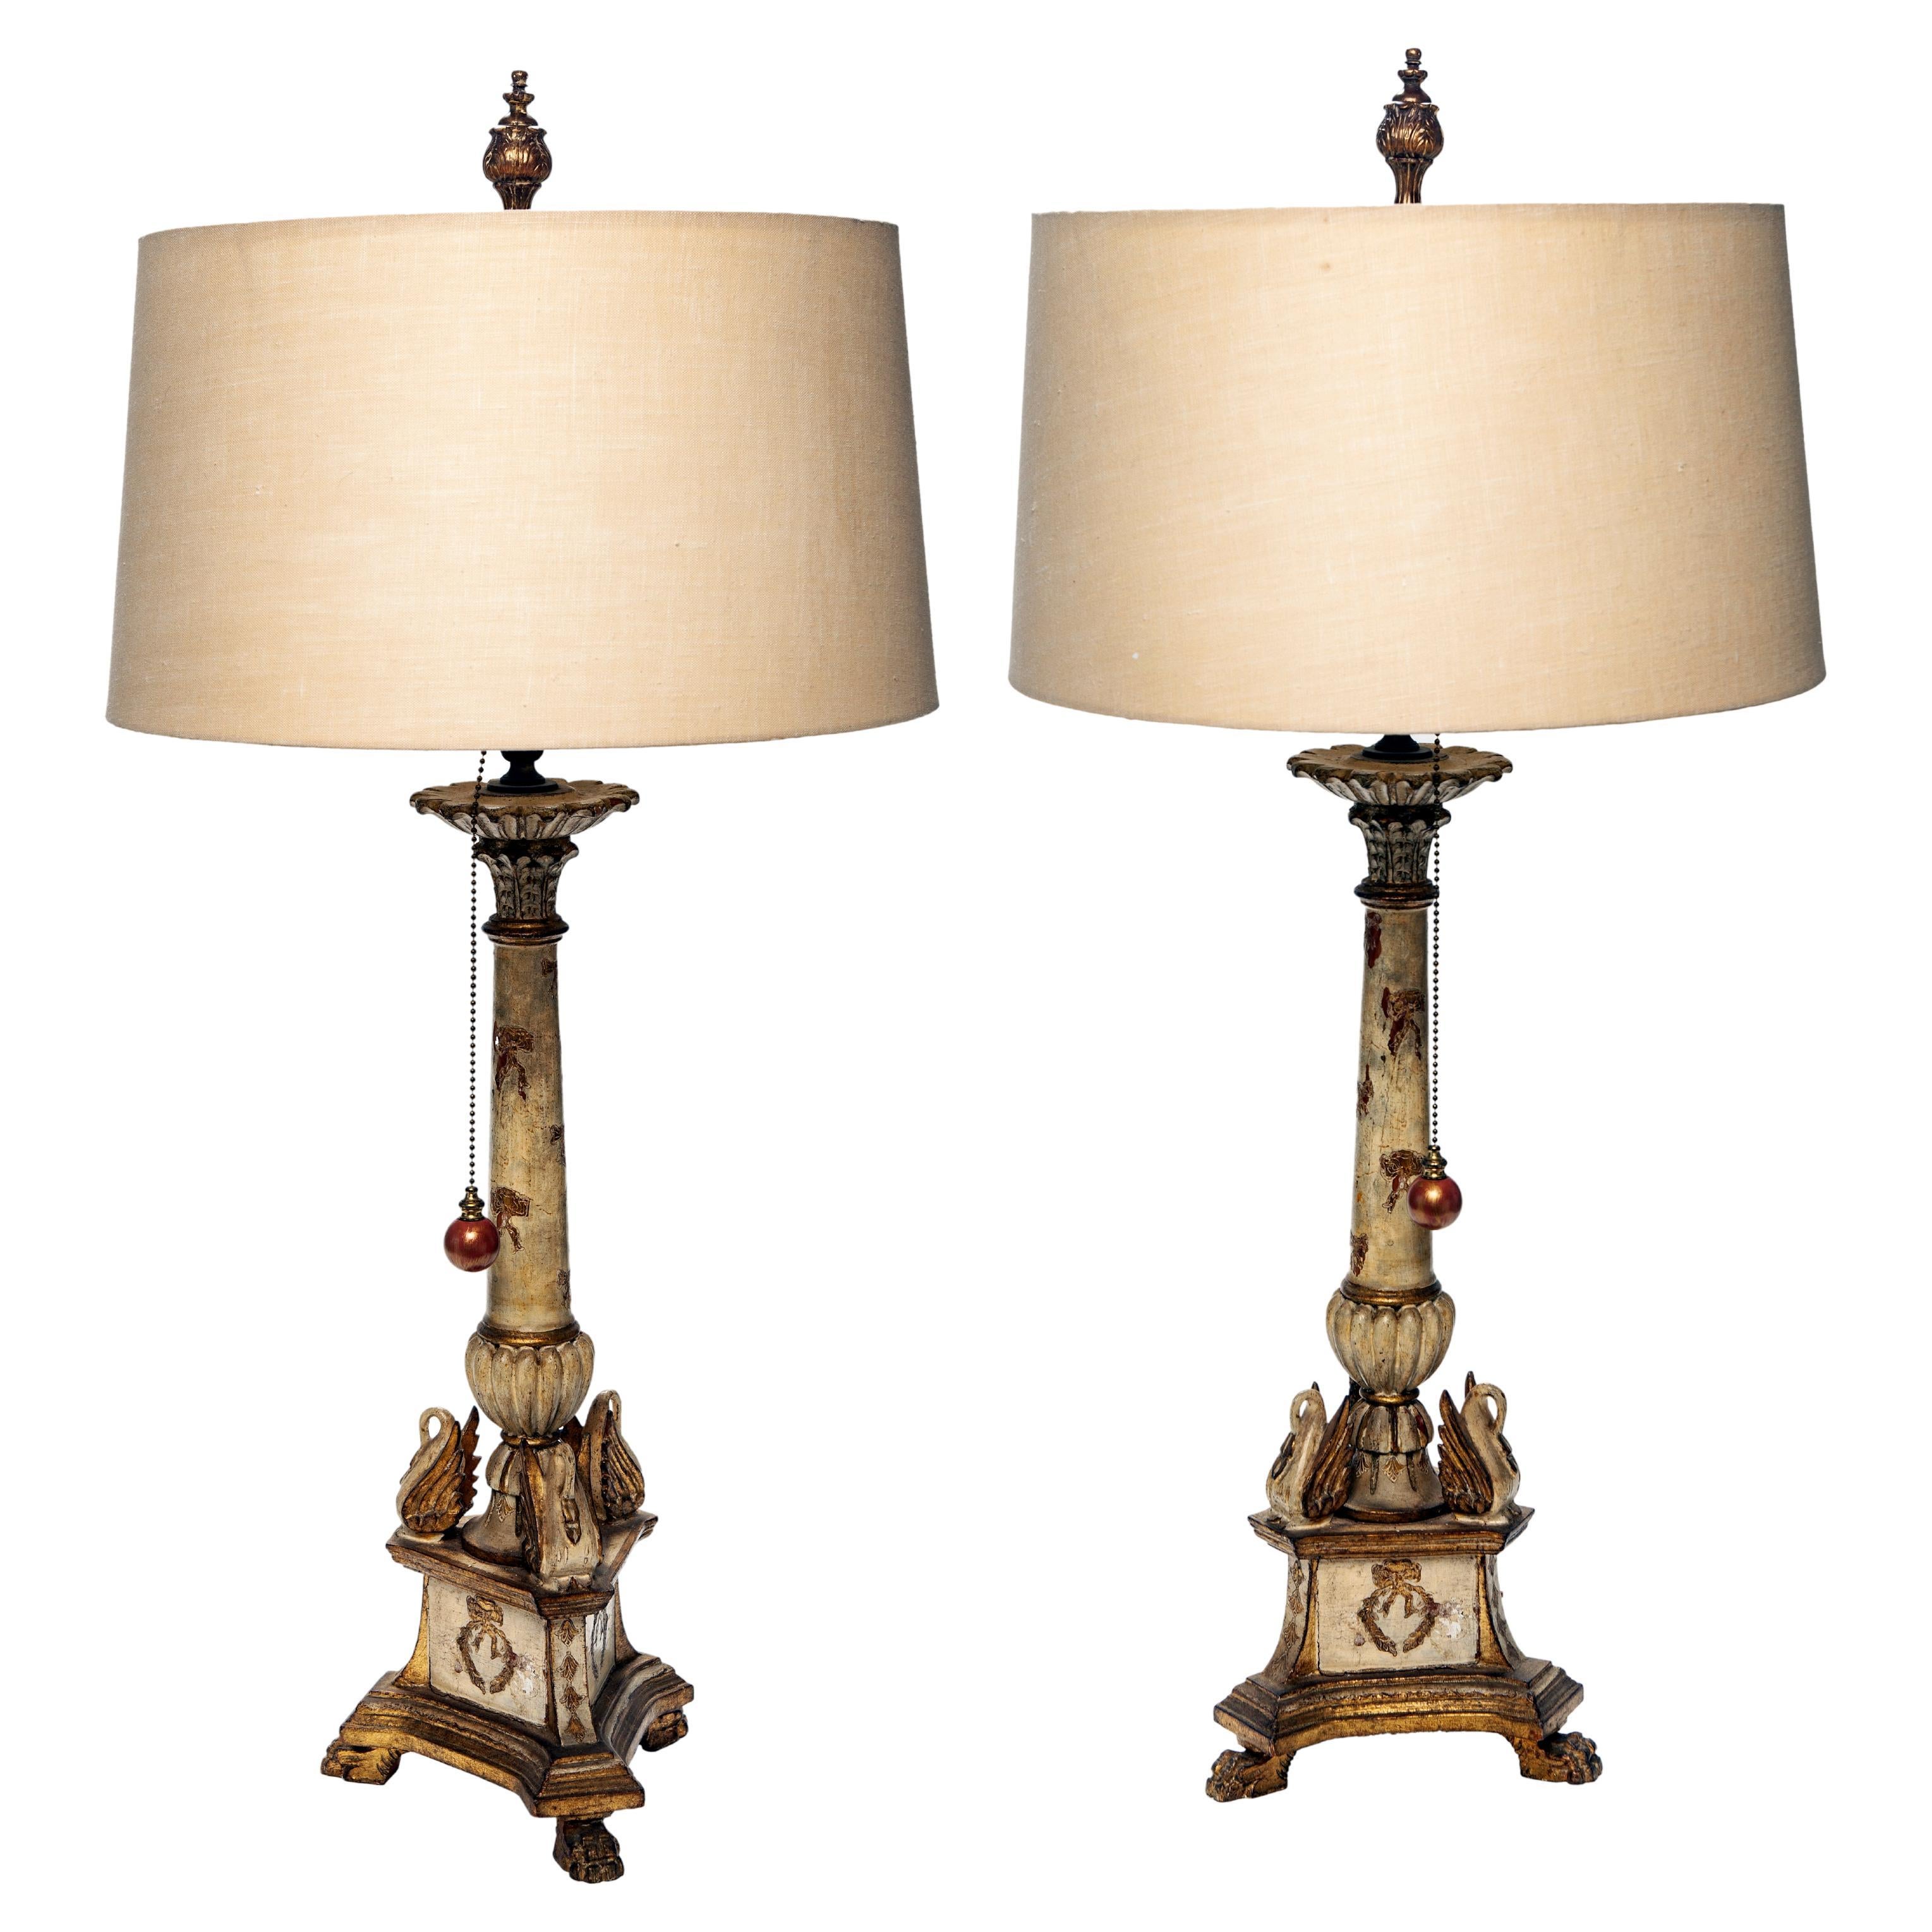 Charmante paire de lampes chandelier Florentine italienne vintage avec des bases en bois sculpté avec une finition peinte et dorée d'origine.
Longue chaîne de perles en laiton avec des tirettes à grosses perles très conviviales et